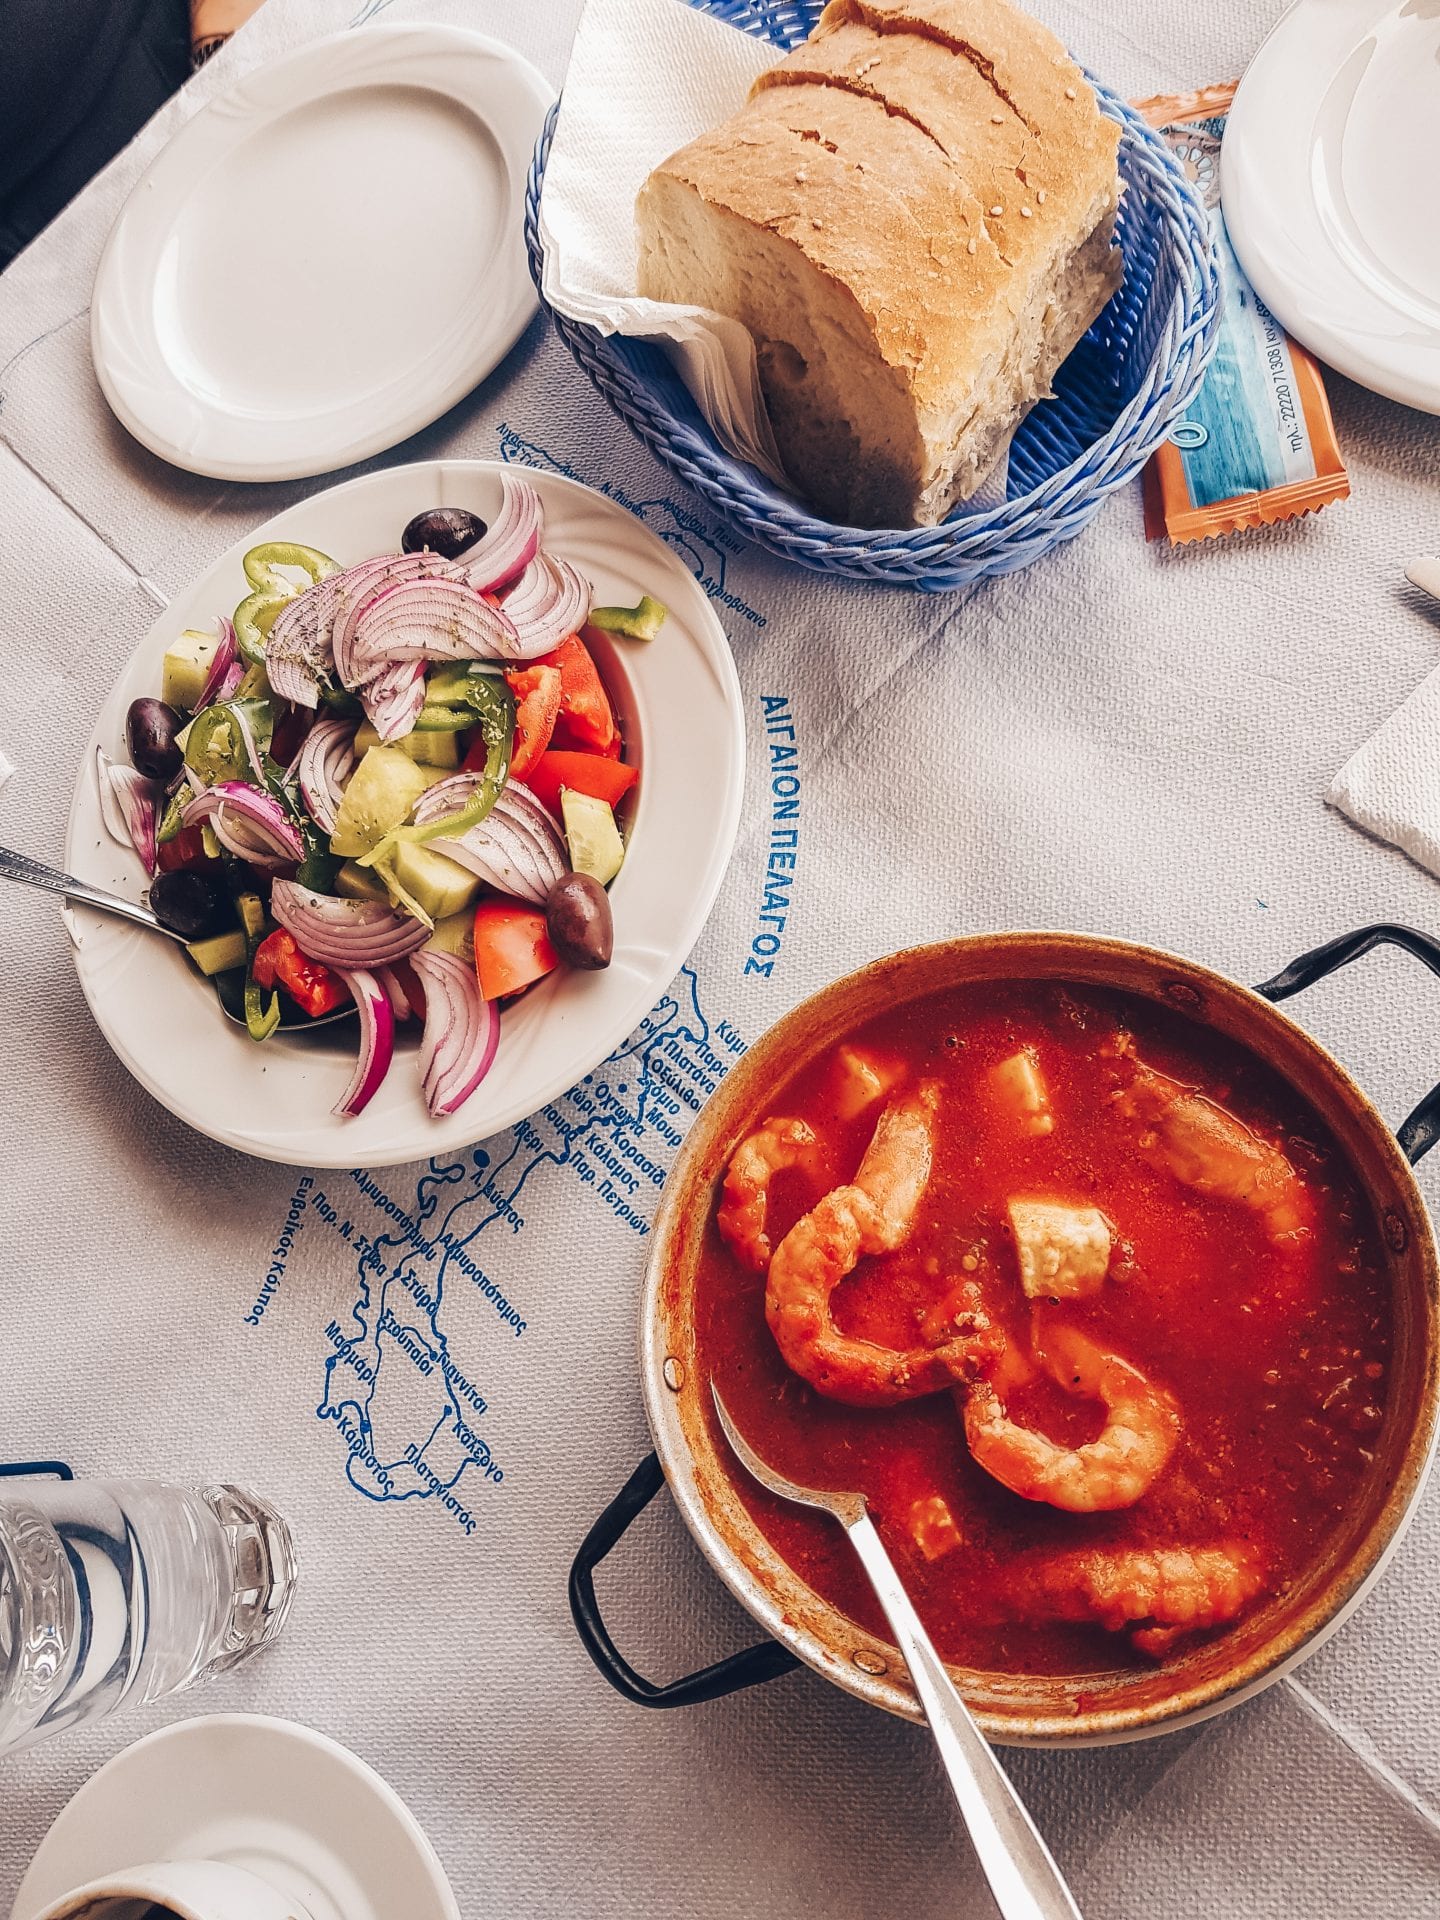 greek food on table